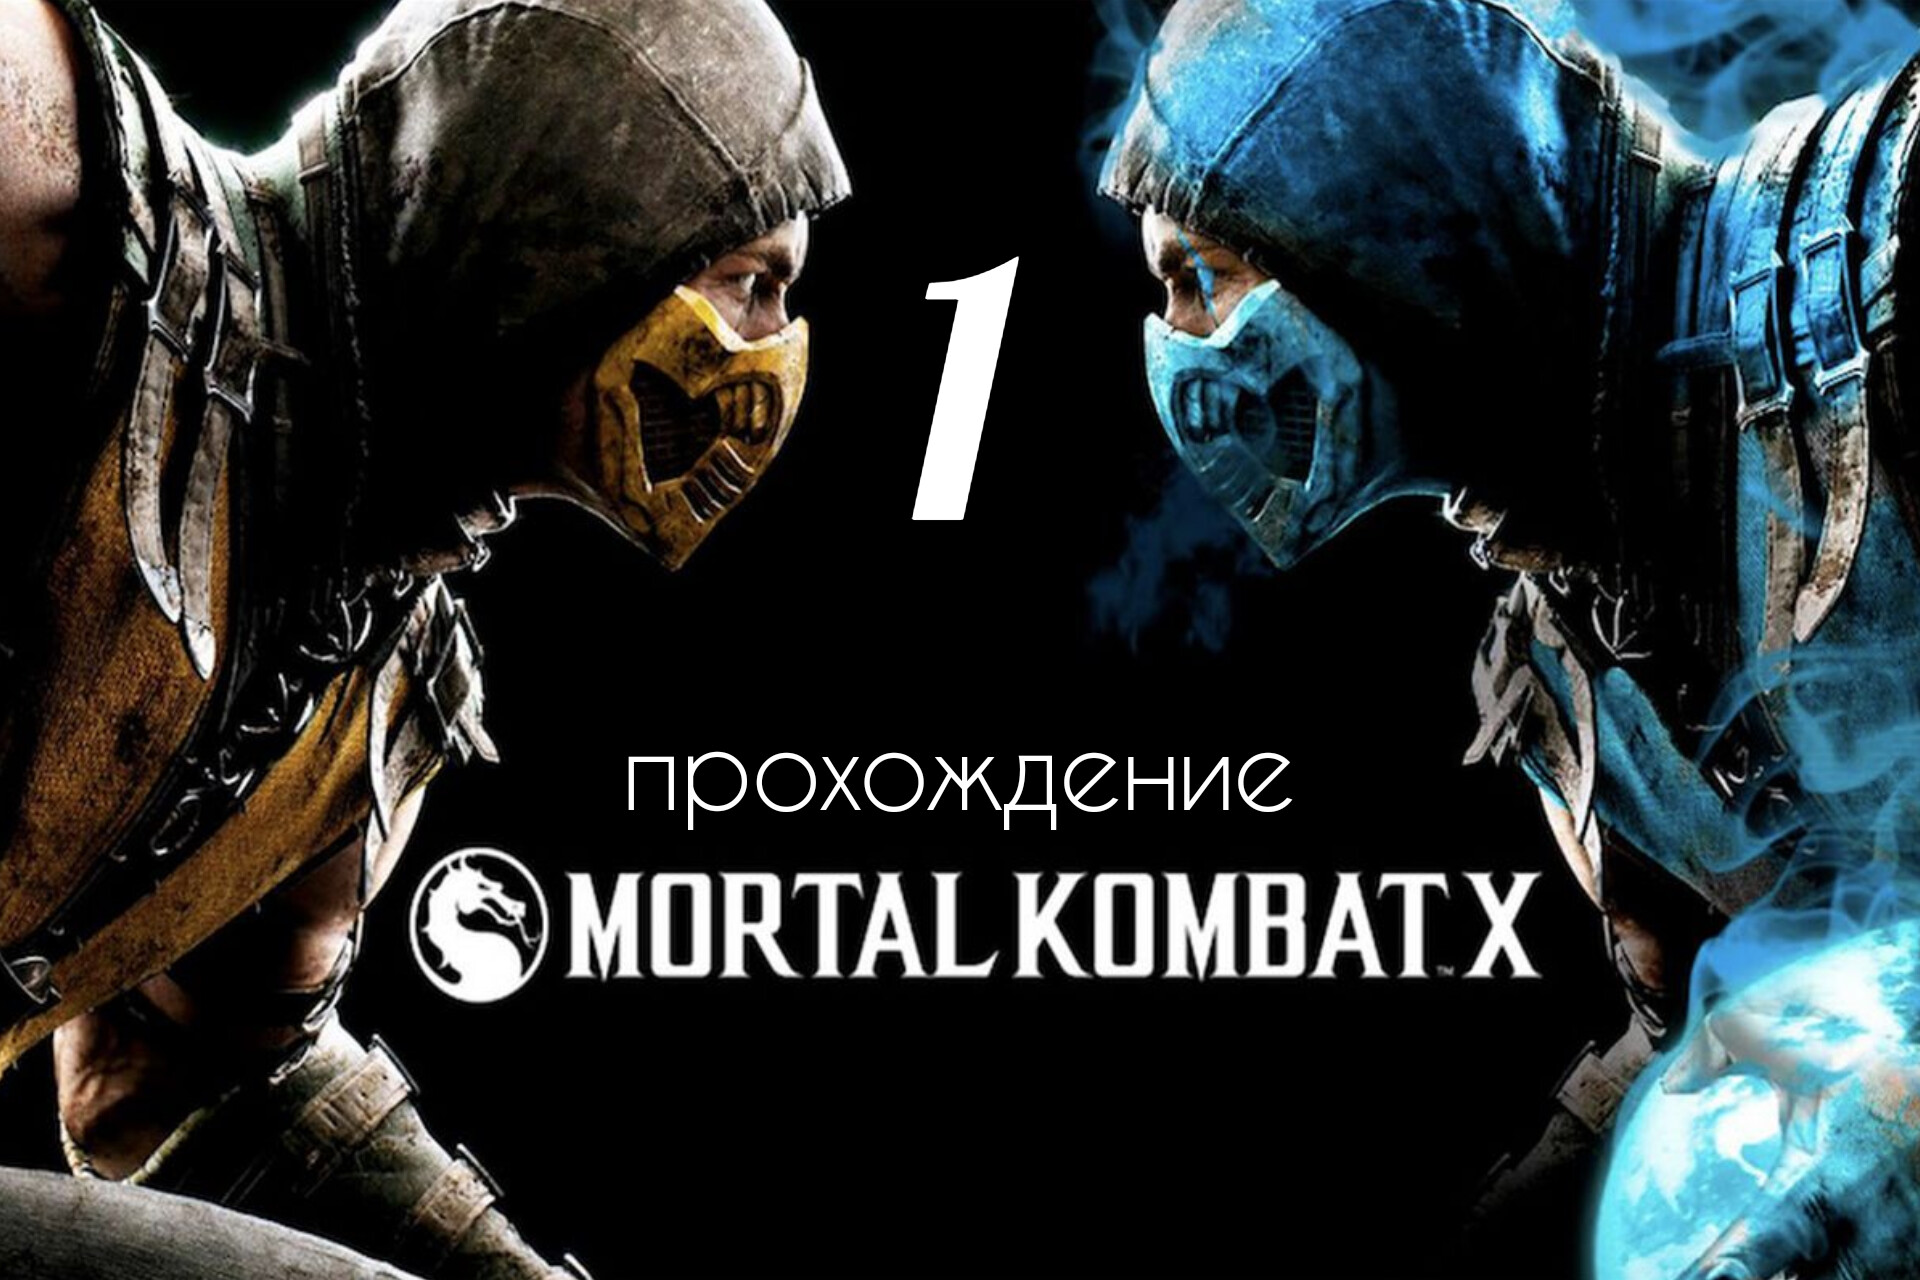 Mortal kombat x updates steam фото 56